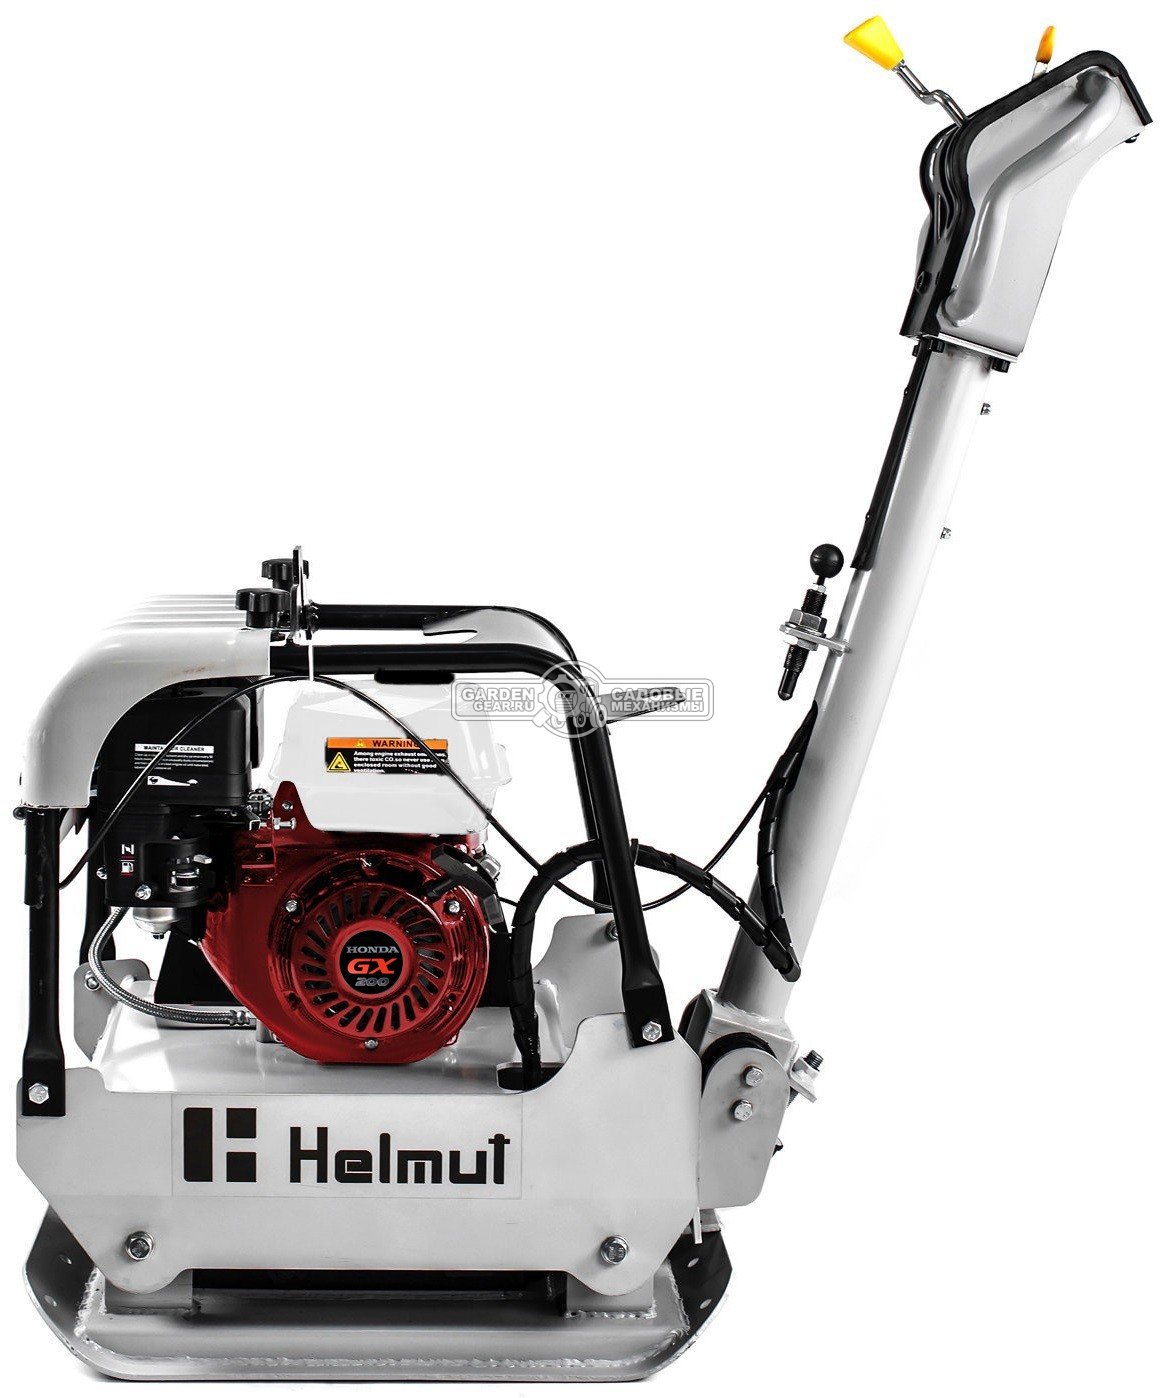 Виброплита Helmut RP120H ( Honda GX200, 196 см3, 6.5 л.с., 620 × 400 мм, 25 кН, 5400 вибр/мин., 120 кг)